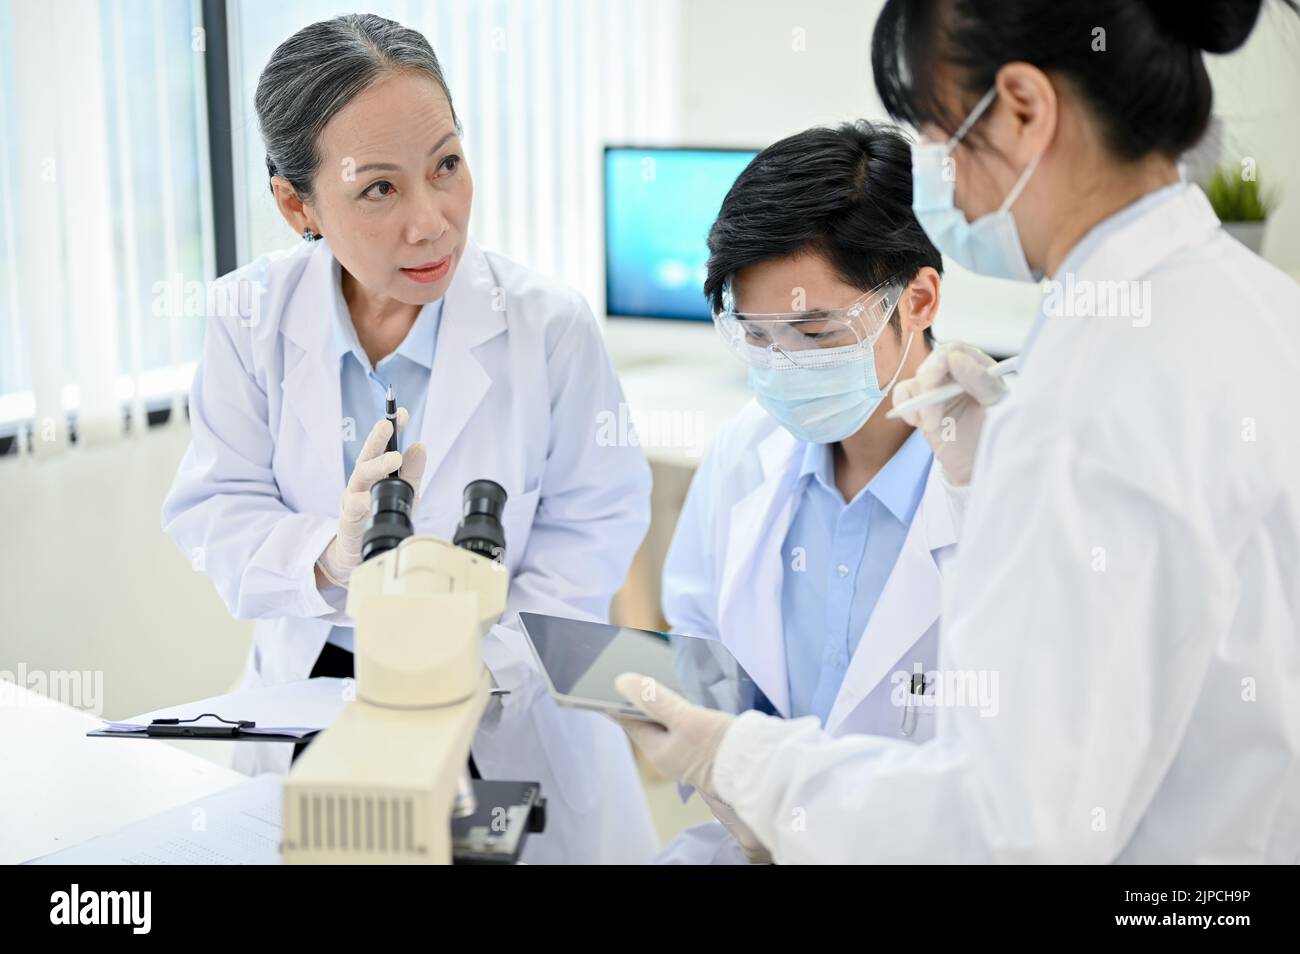 Una supervisora profesional especialista médica superior asiática que capacita en el laboratorio a dos jóvenes especialistas médicos asiáticos menores. Foto de stock